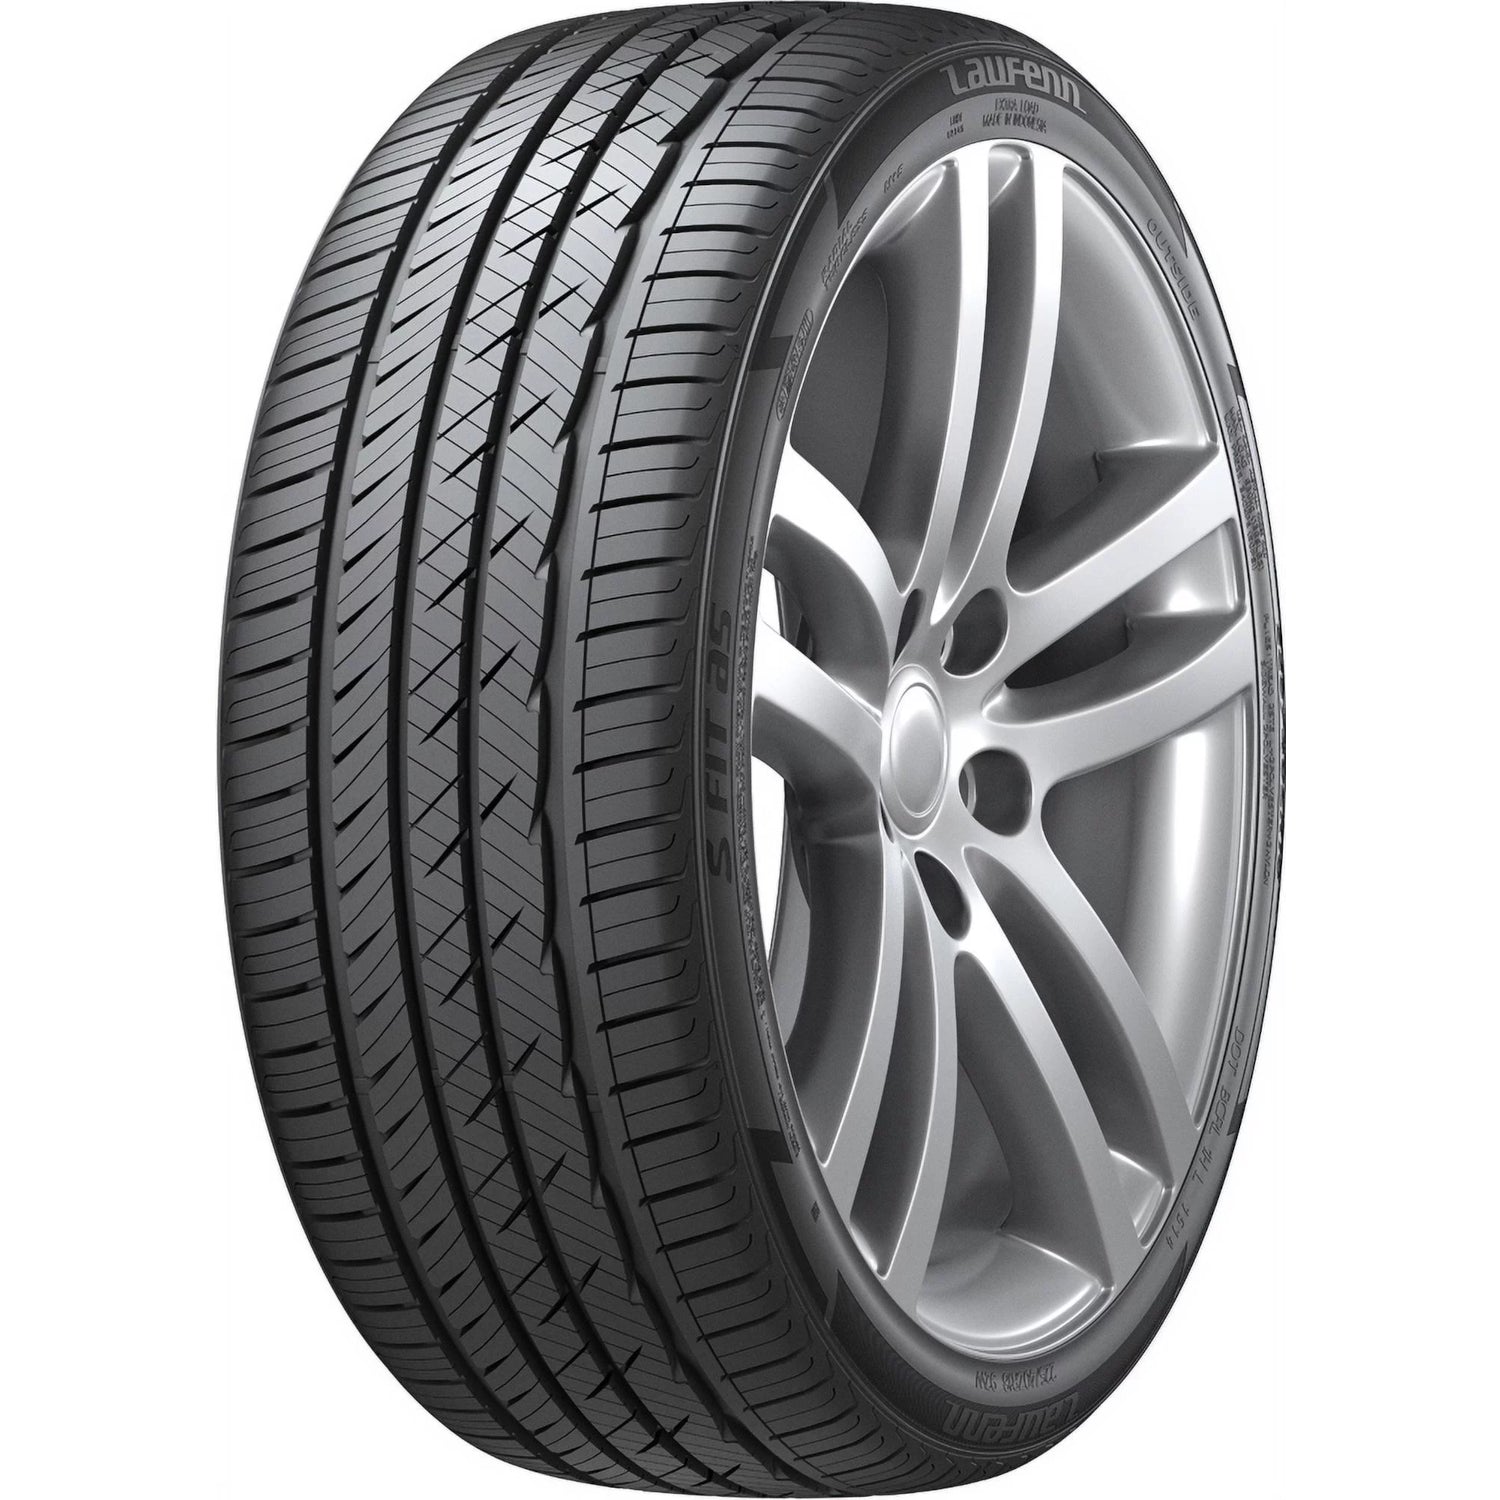 LAUFENN S FIT AS 265/50R20 (30.4X10.4R 20) Tires